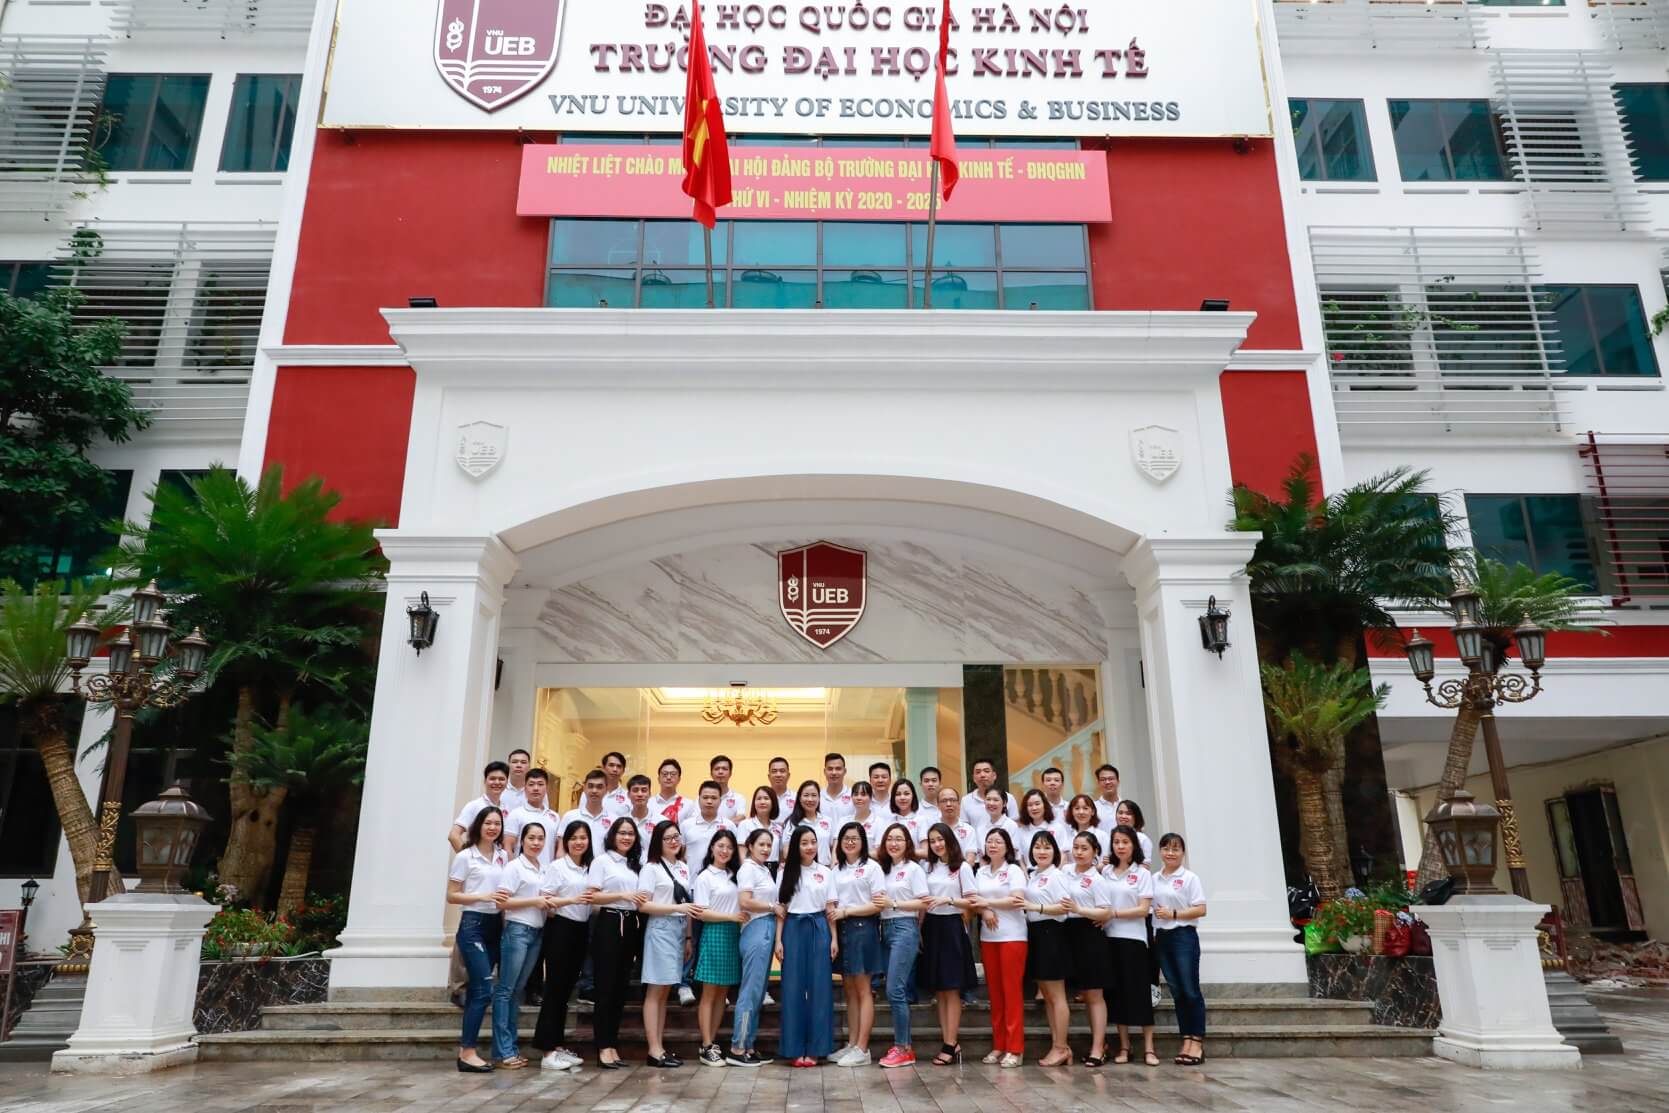 Trường Đại học Kinh tế - Hà Nội (UEB)